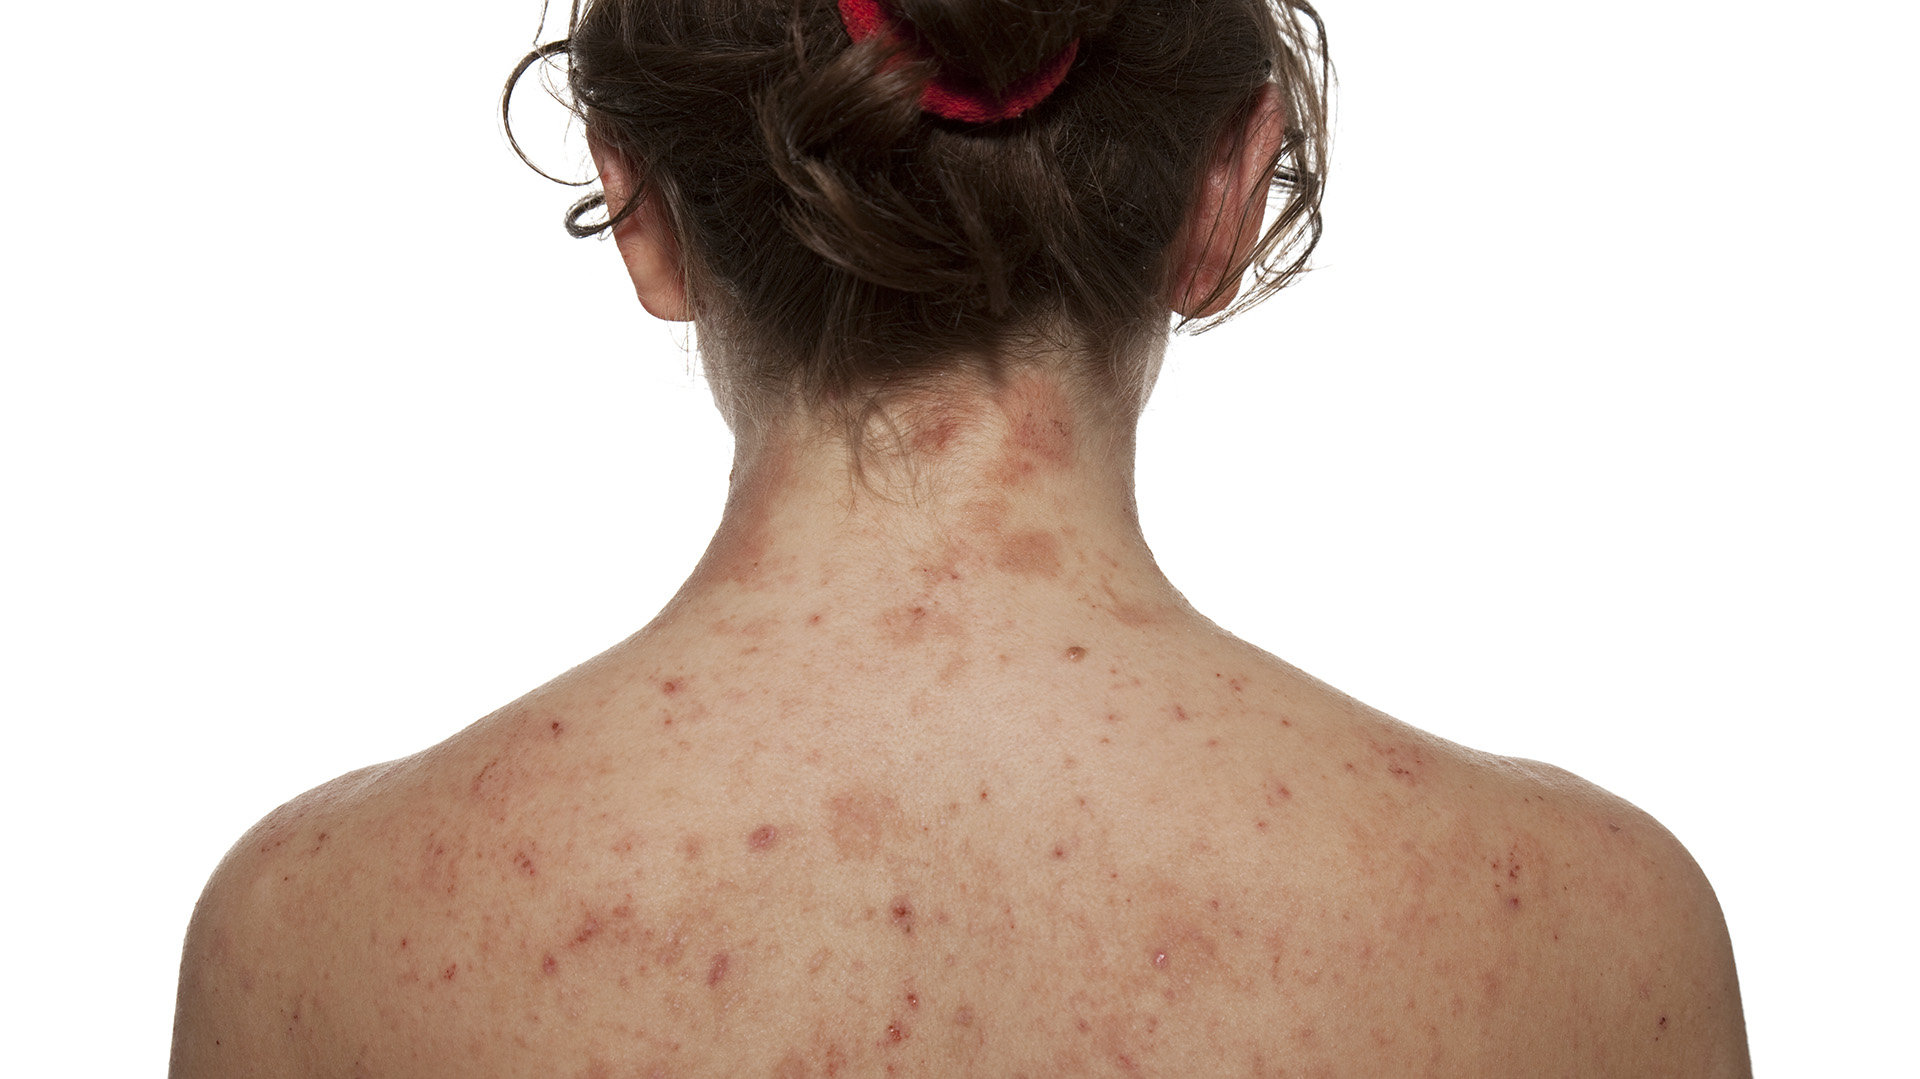 La dermatitis atópica es una condición crónica y recurrente que provoca enrojecimiento, picazón e inflamación de la piel / (Getty Images) / 